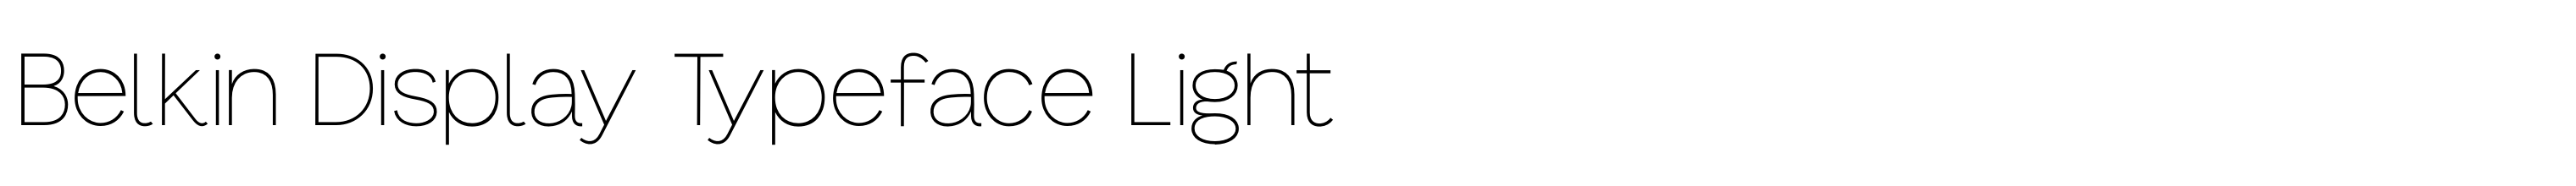 Belkin Display Typeface Light